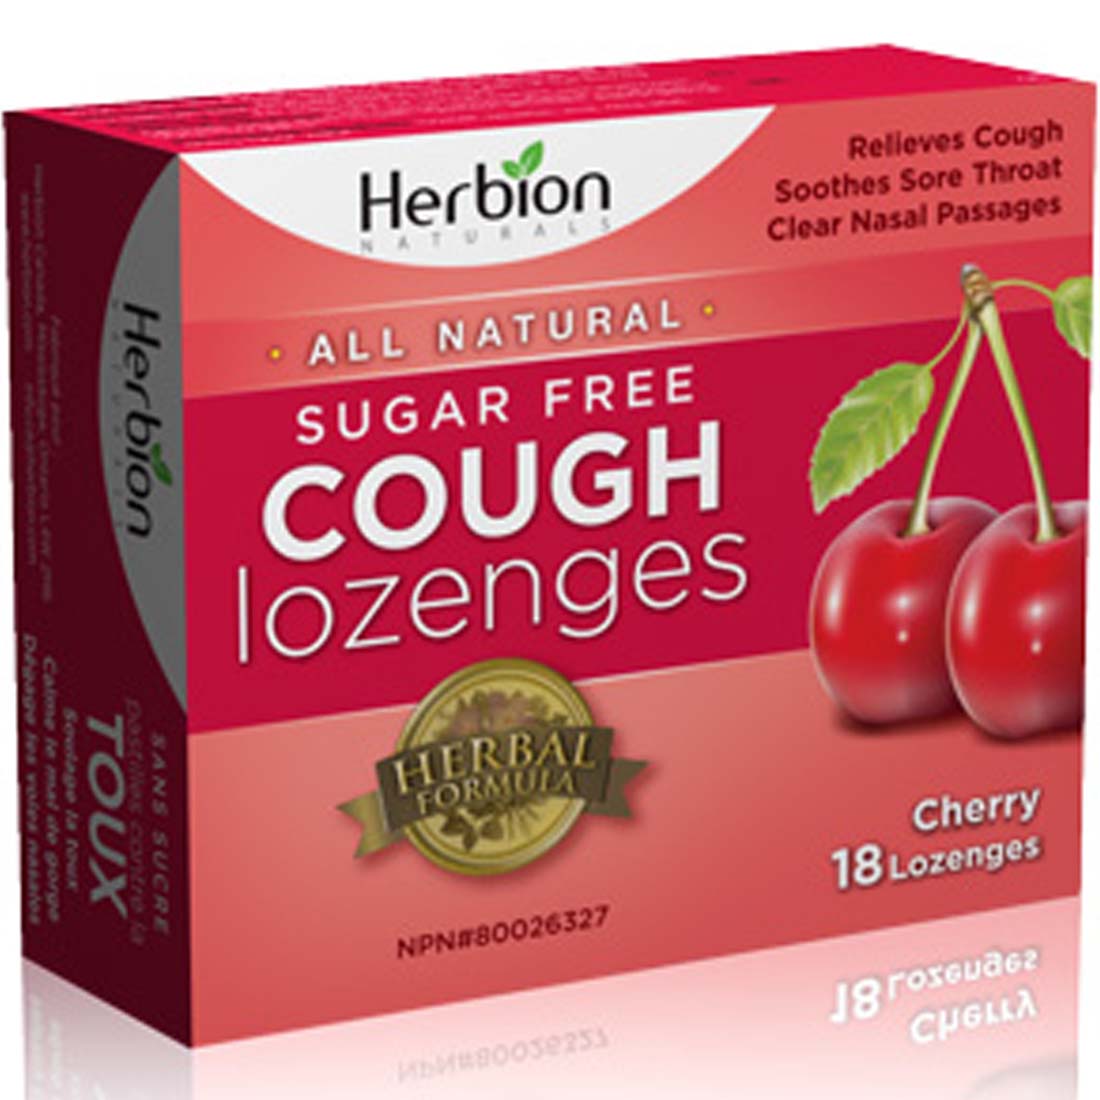 Herbion Cough Lozenges